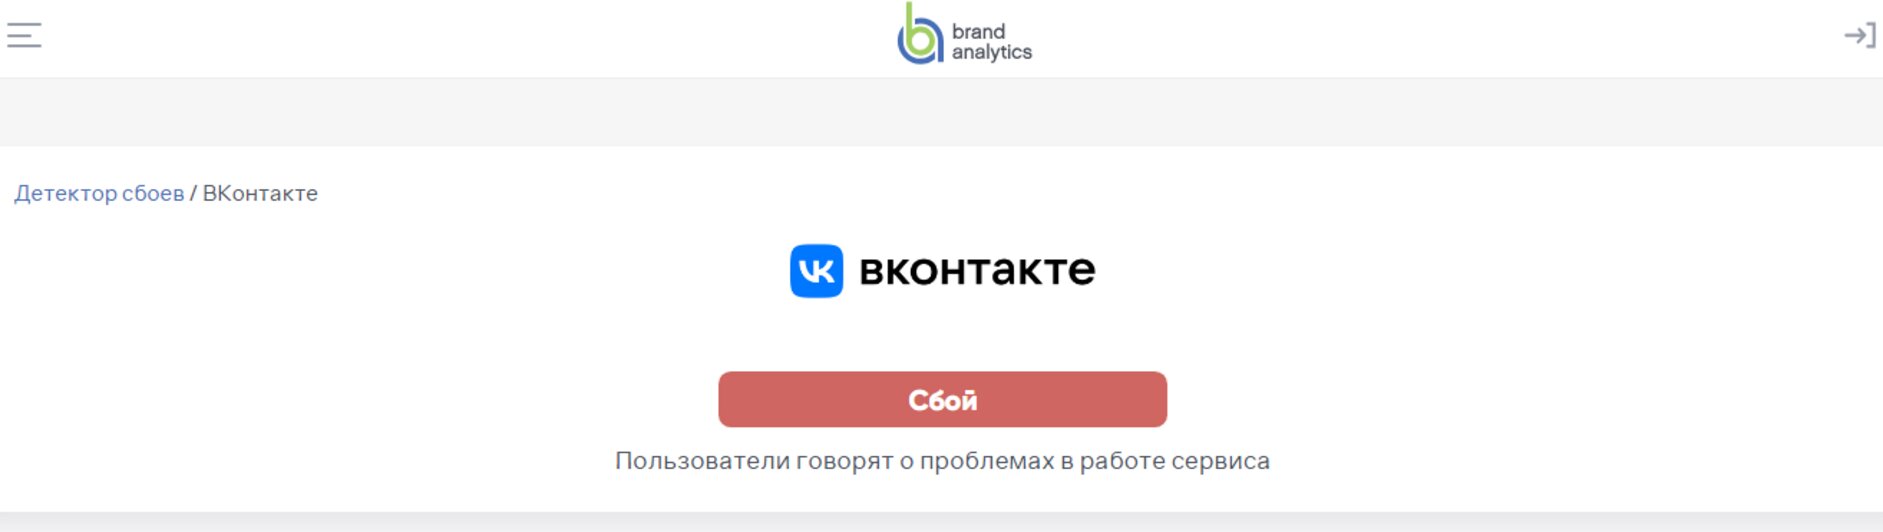 ВКонтакте (ВК, Вконтакте, Vkontakte) - симптомы ошибок и сбоев, способы решения проблем